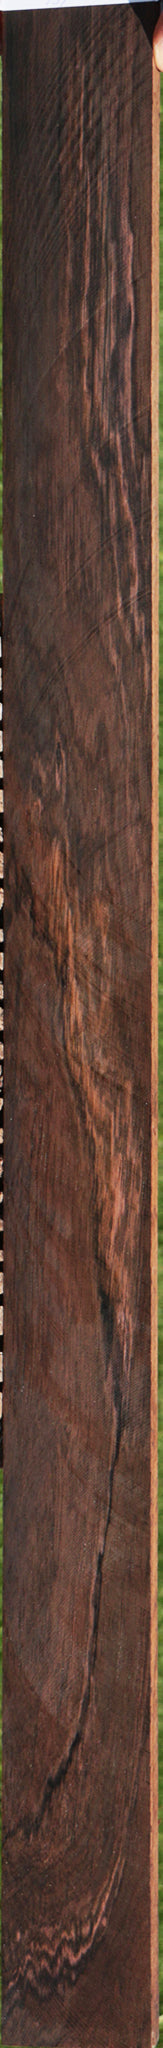 Brazilian Rosewood Micro Lumber